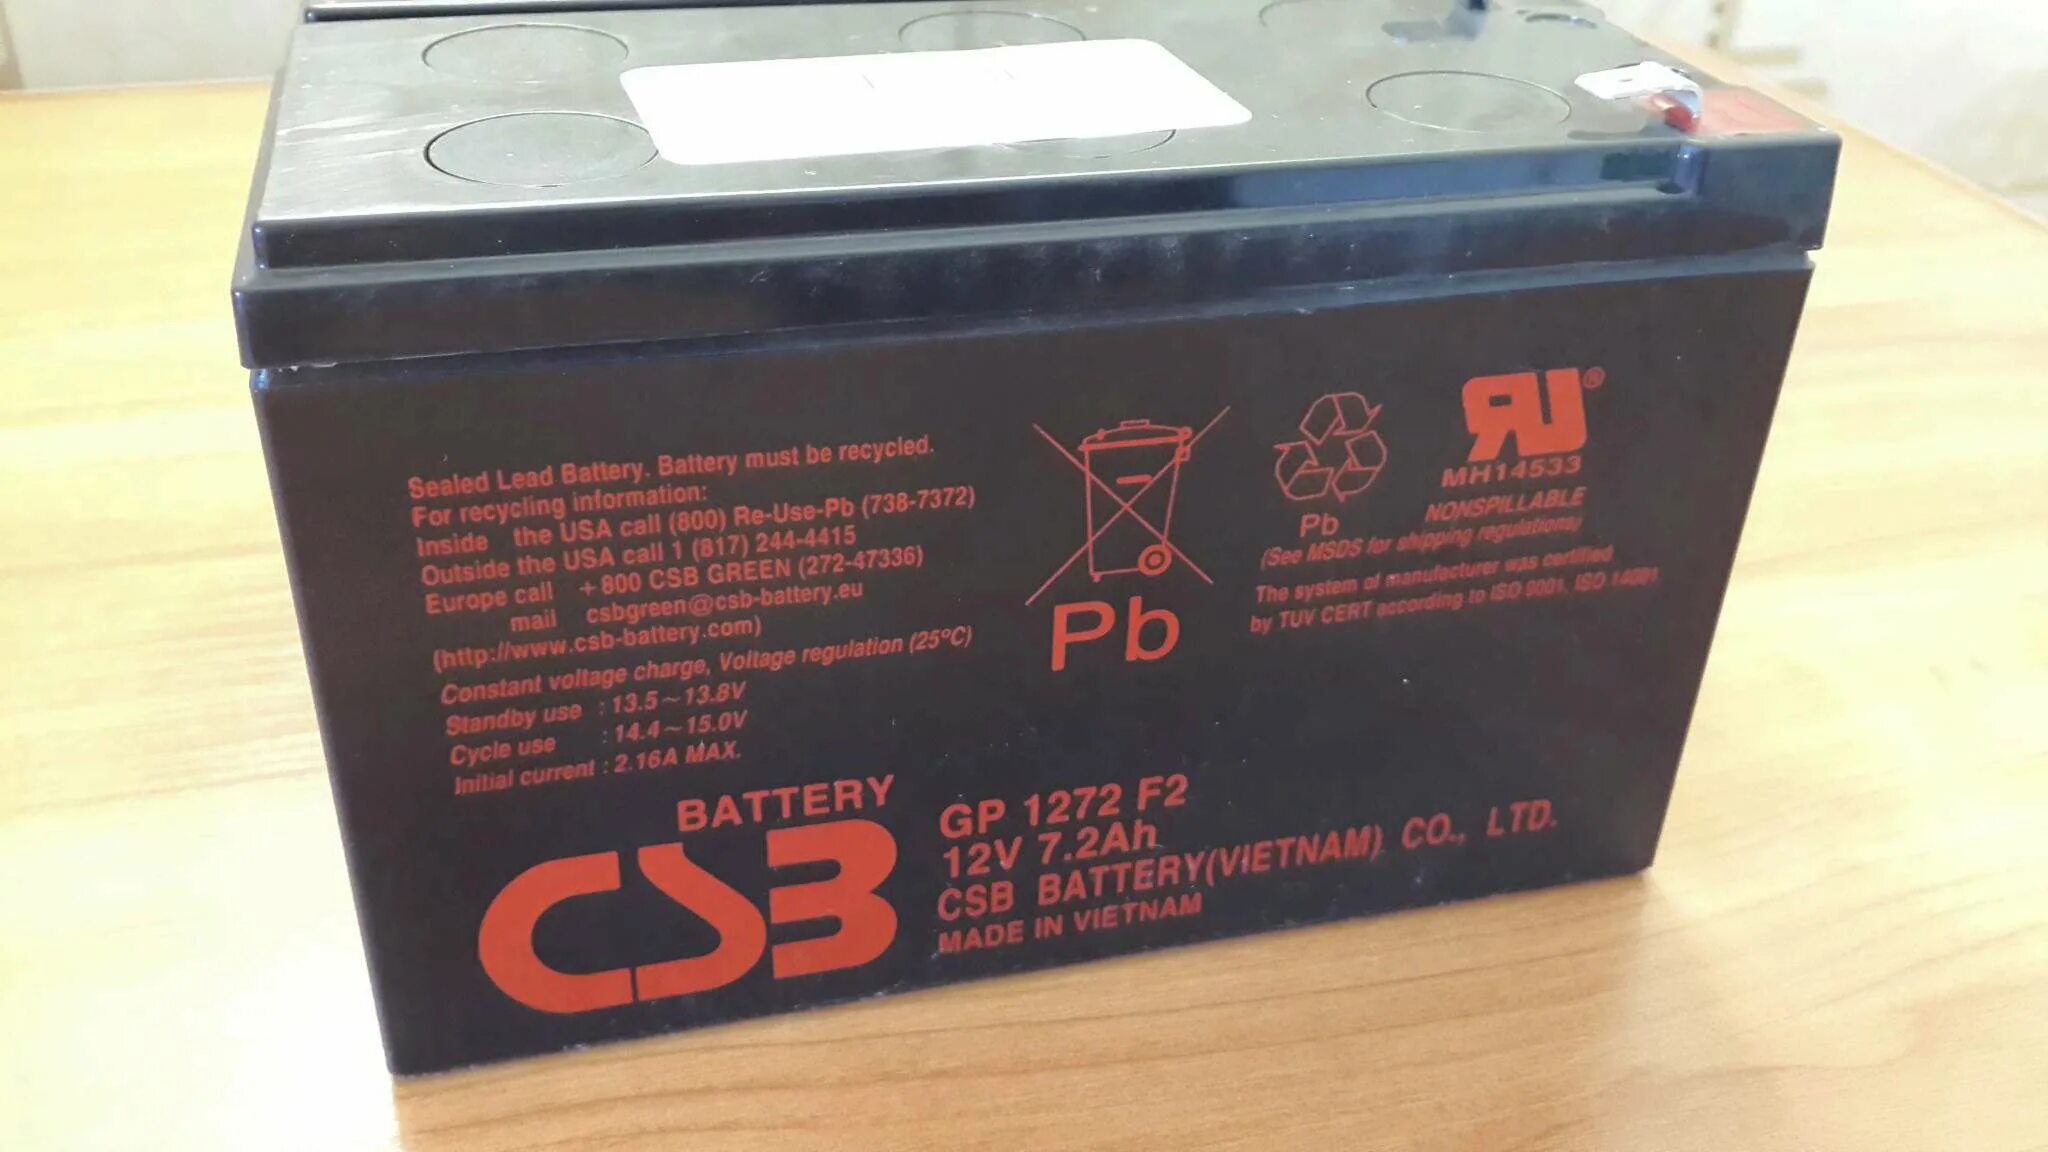 Gp1272 f2 12v. Аккумуляторная батарея CSB gp1272 f2. Аккумуляторная батарея для ИБП CSB GP 1272 f2 12v 7.2Ah. CSB GP 1272 f2 28w 7.2 а·ч. АКБ 7 Ah CSB.